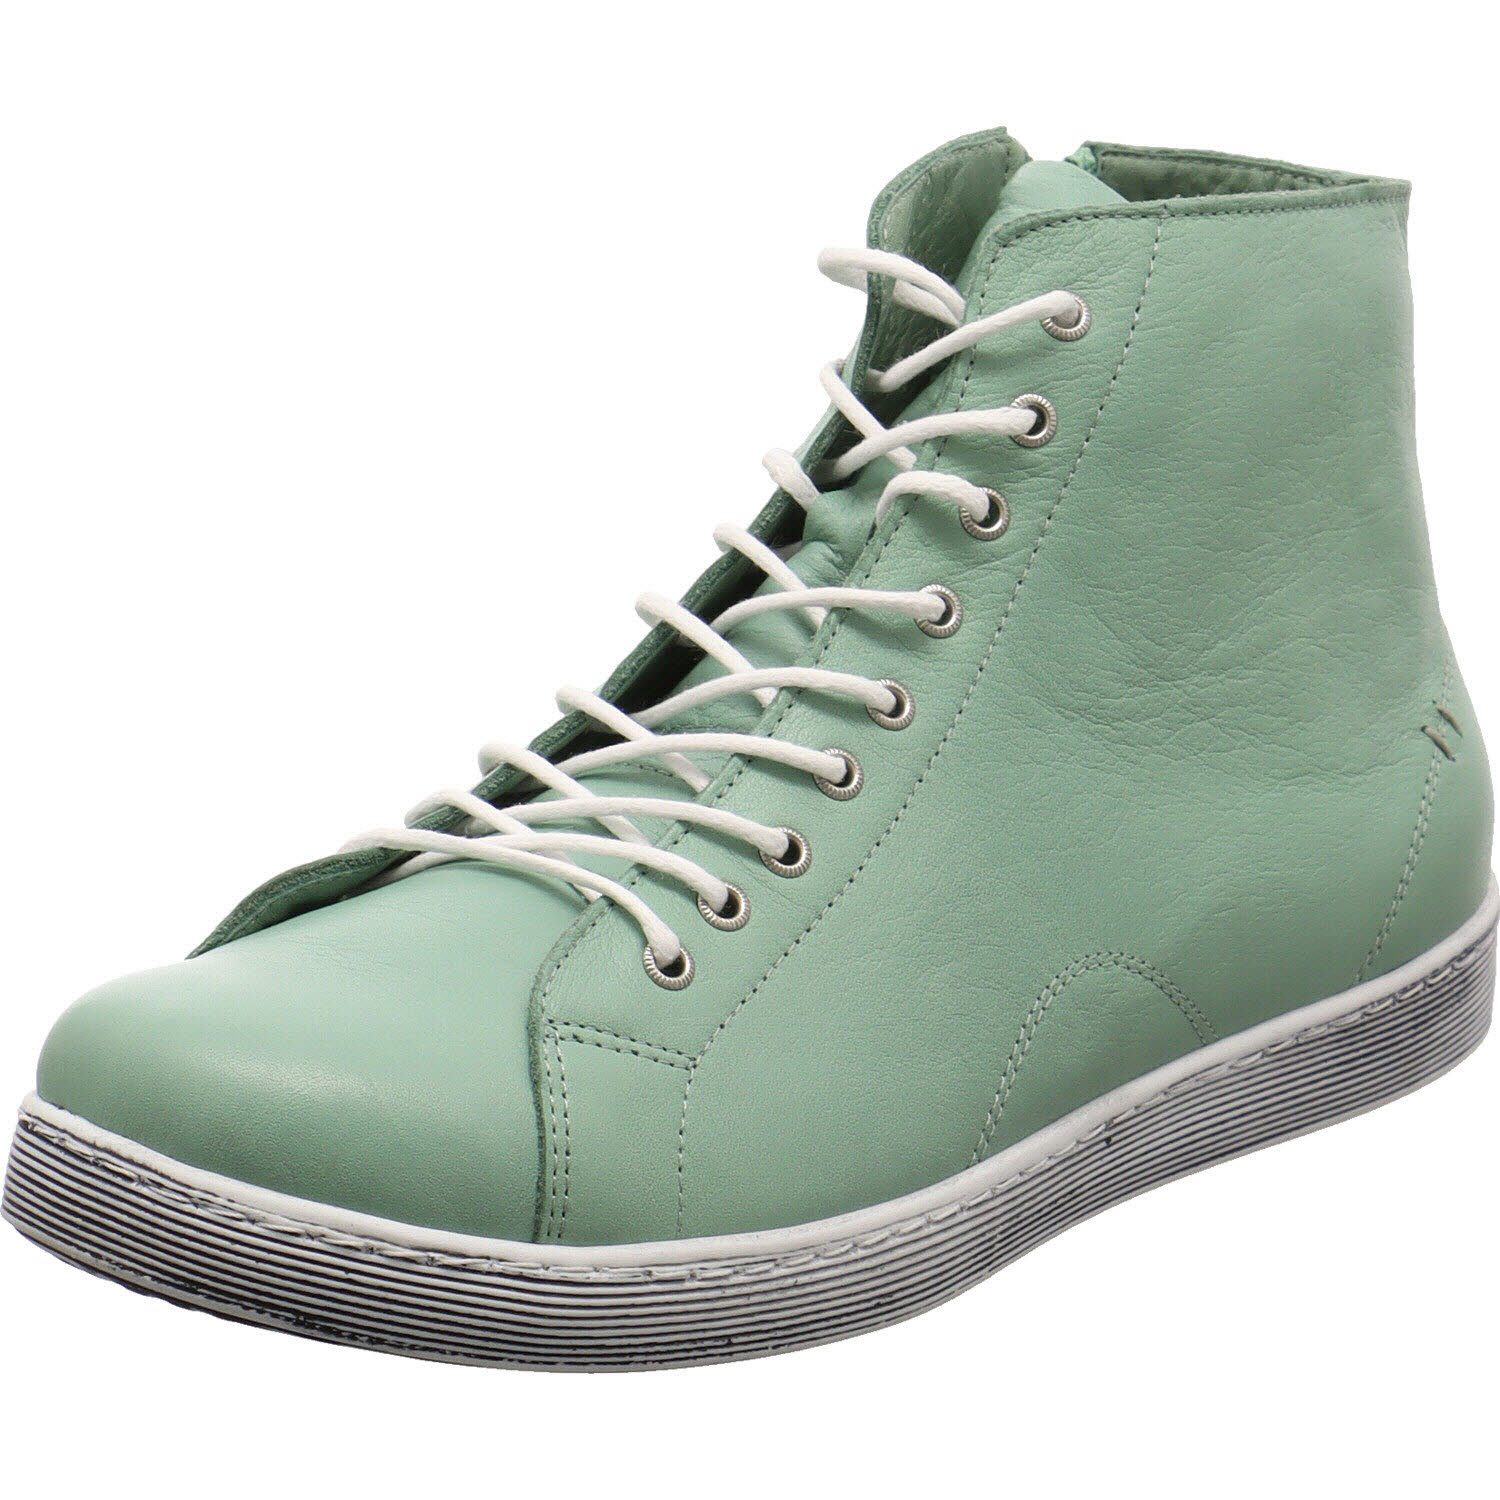 Damen Sneaker high von Andrea Conti auch in Grün erhältlich